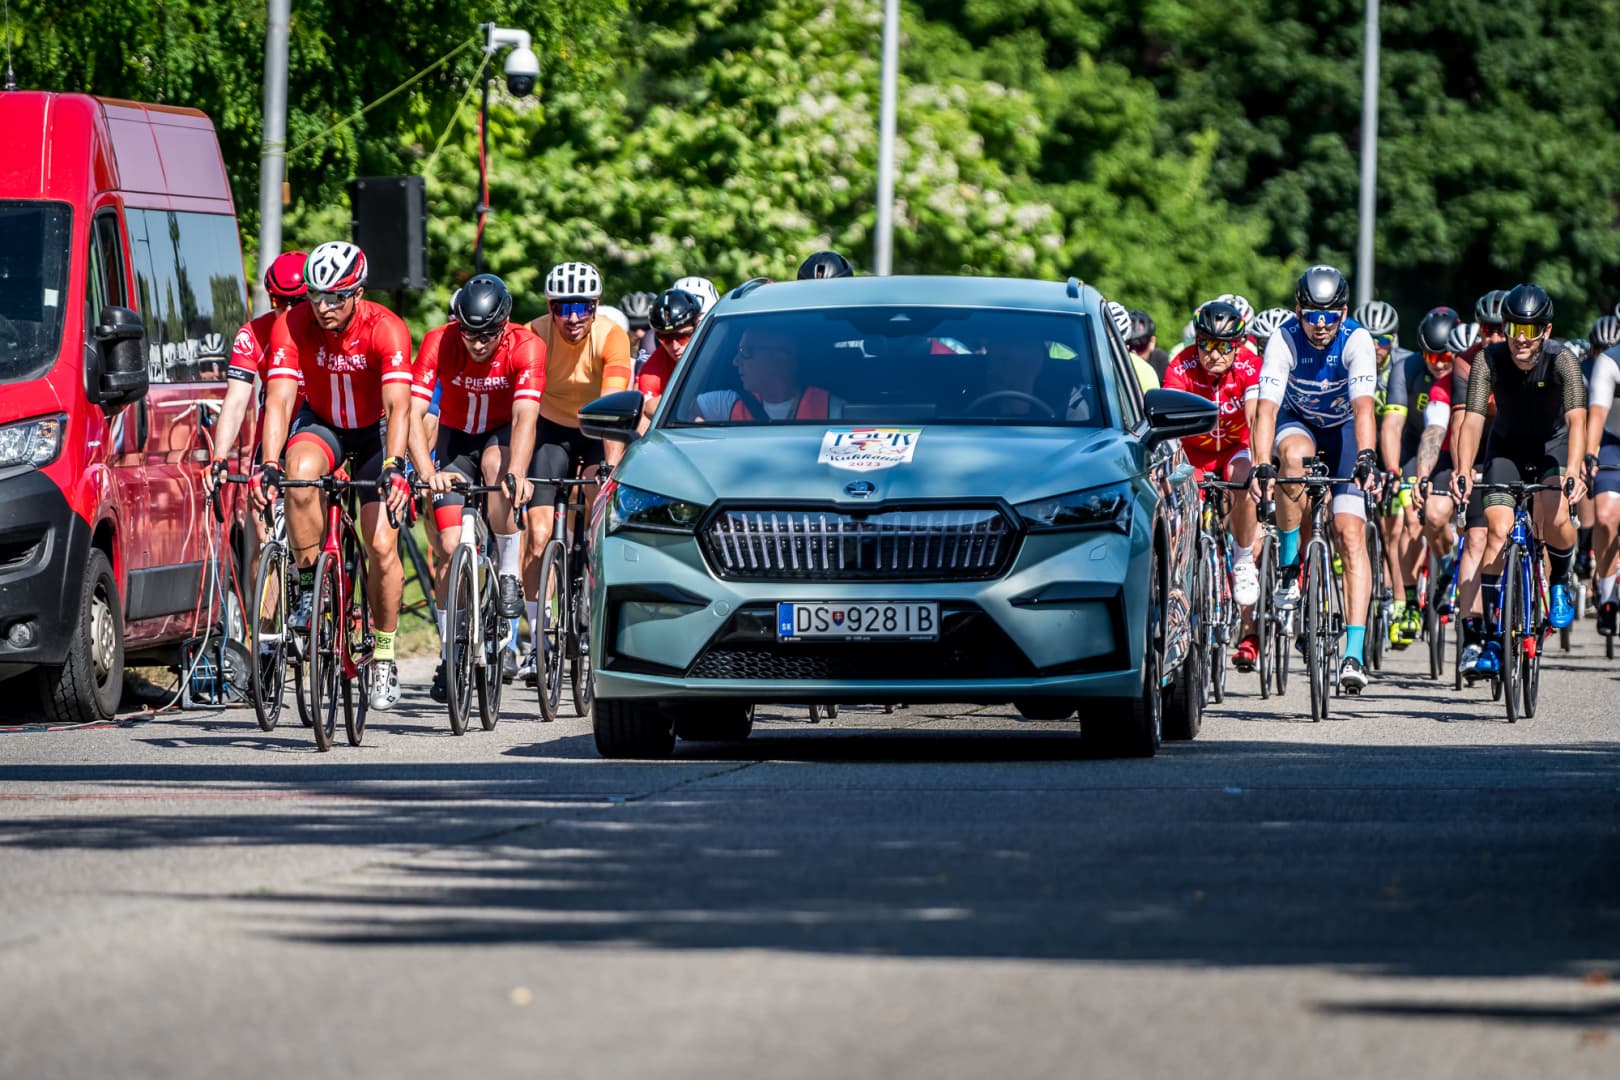 380 kerékpáros tekert a népszerű Tour de Kukkonia versenyen (FOTÓK és VIDEÓ)